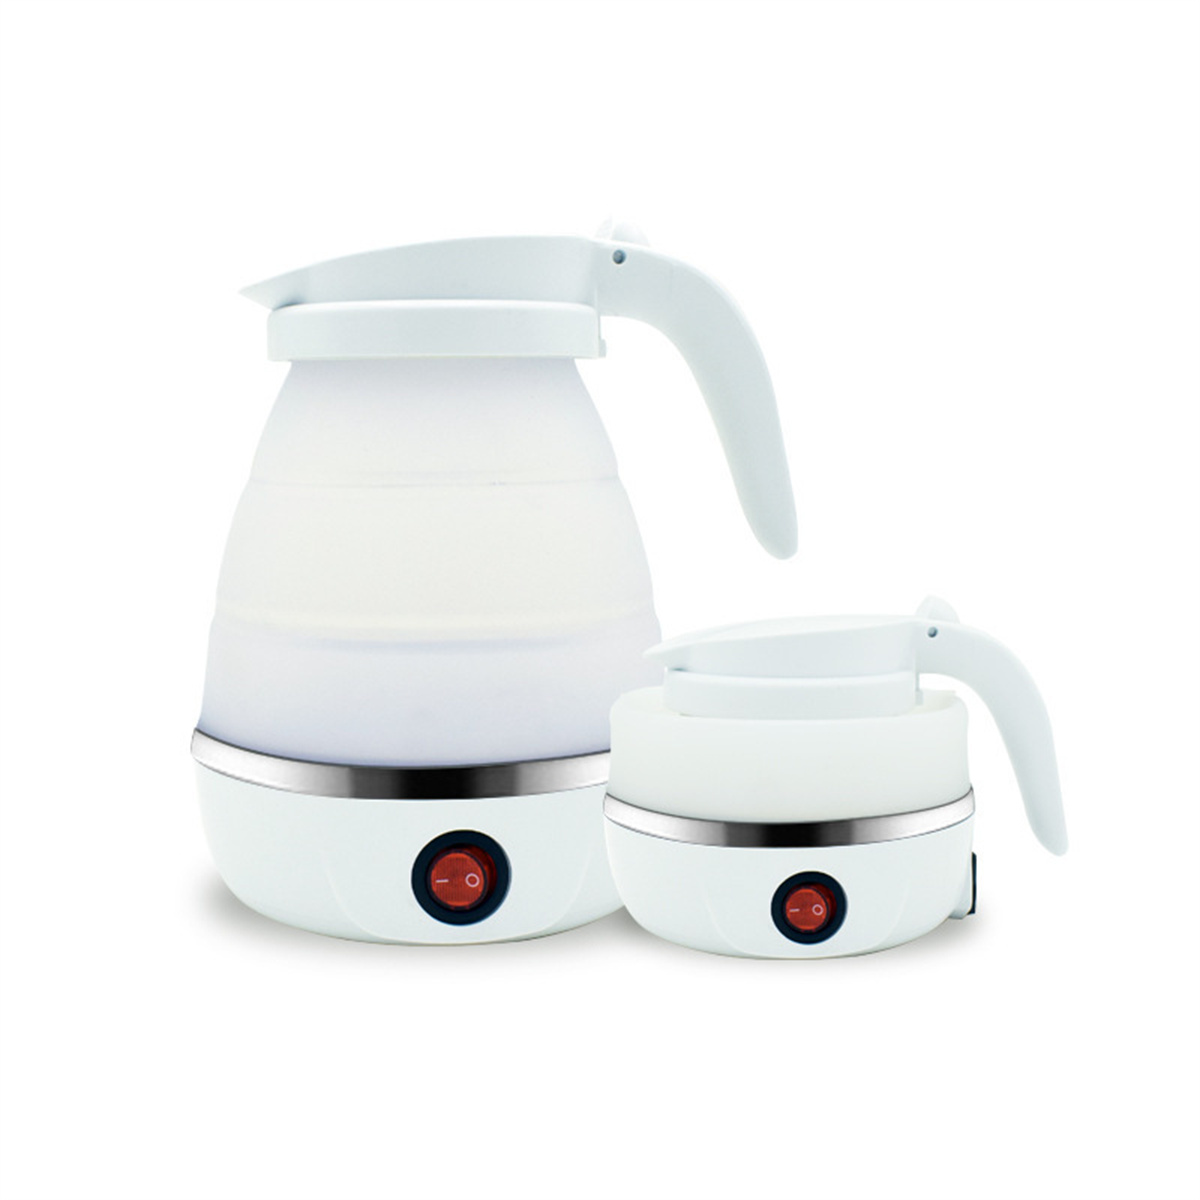 FEI Elektrischer Wasserkocher Weiß 304 Edelstahl Wasserkocher, Wasserkocher Zusammenklappbarer Mini-Wasserkocher Weiß